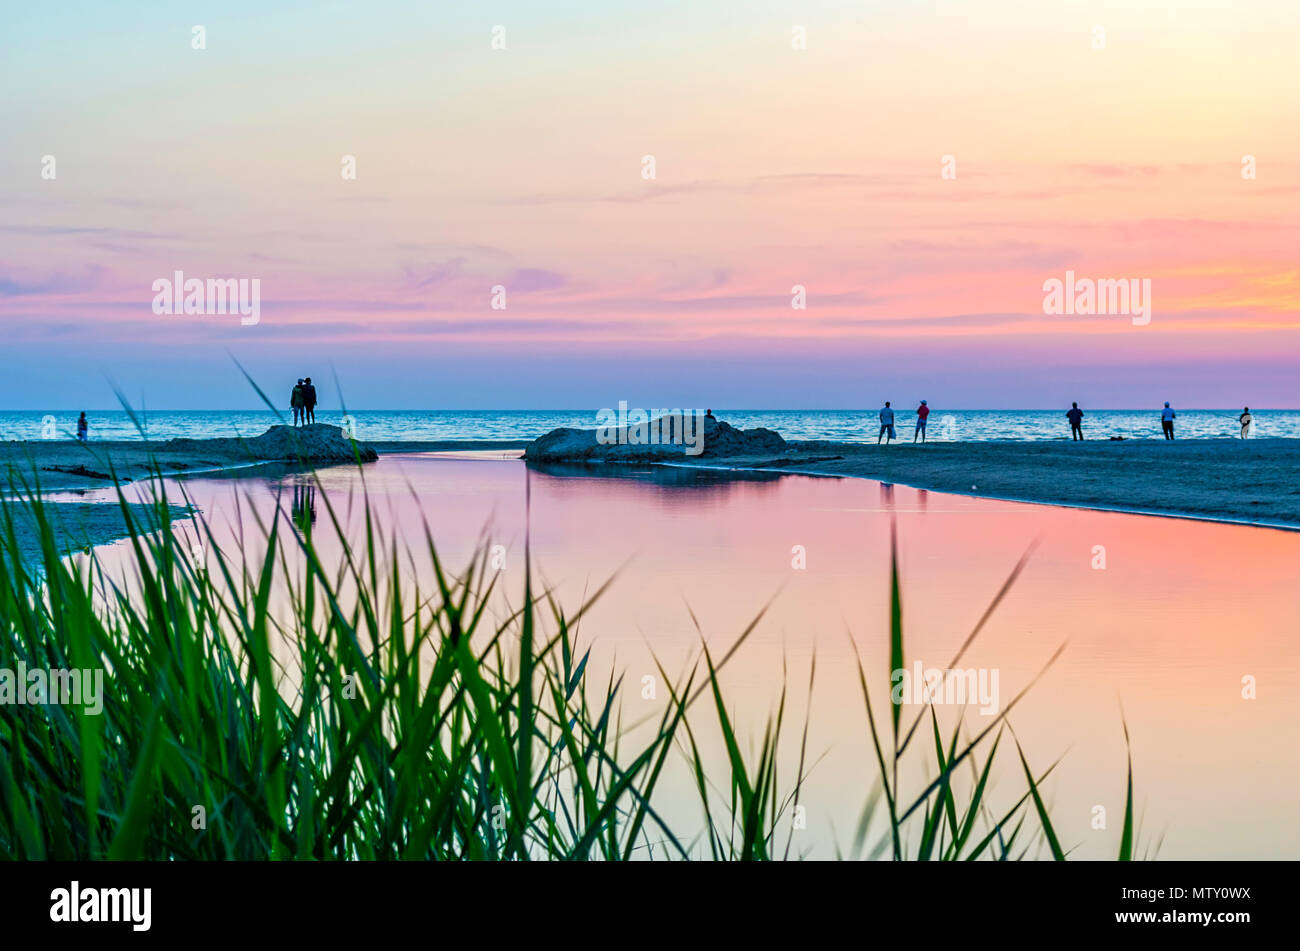 Touristen und Fischer sind am Schwarzen Meer und genießen Sie den schönen Sonnenuntergang. Ein Paar in Liebe nimmt eine selfie gegen den Sonnenuntergang. Stockfoto